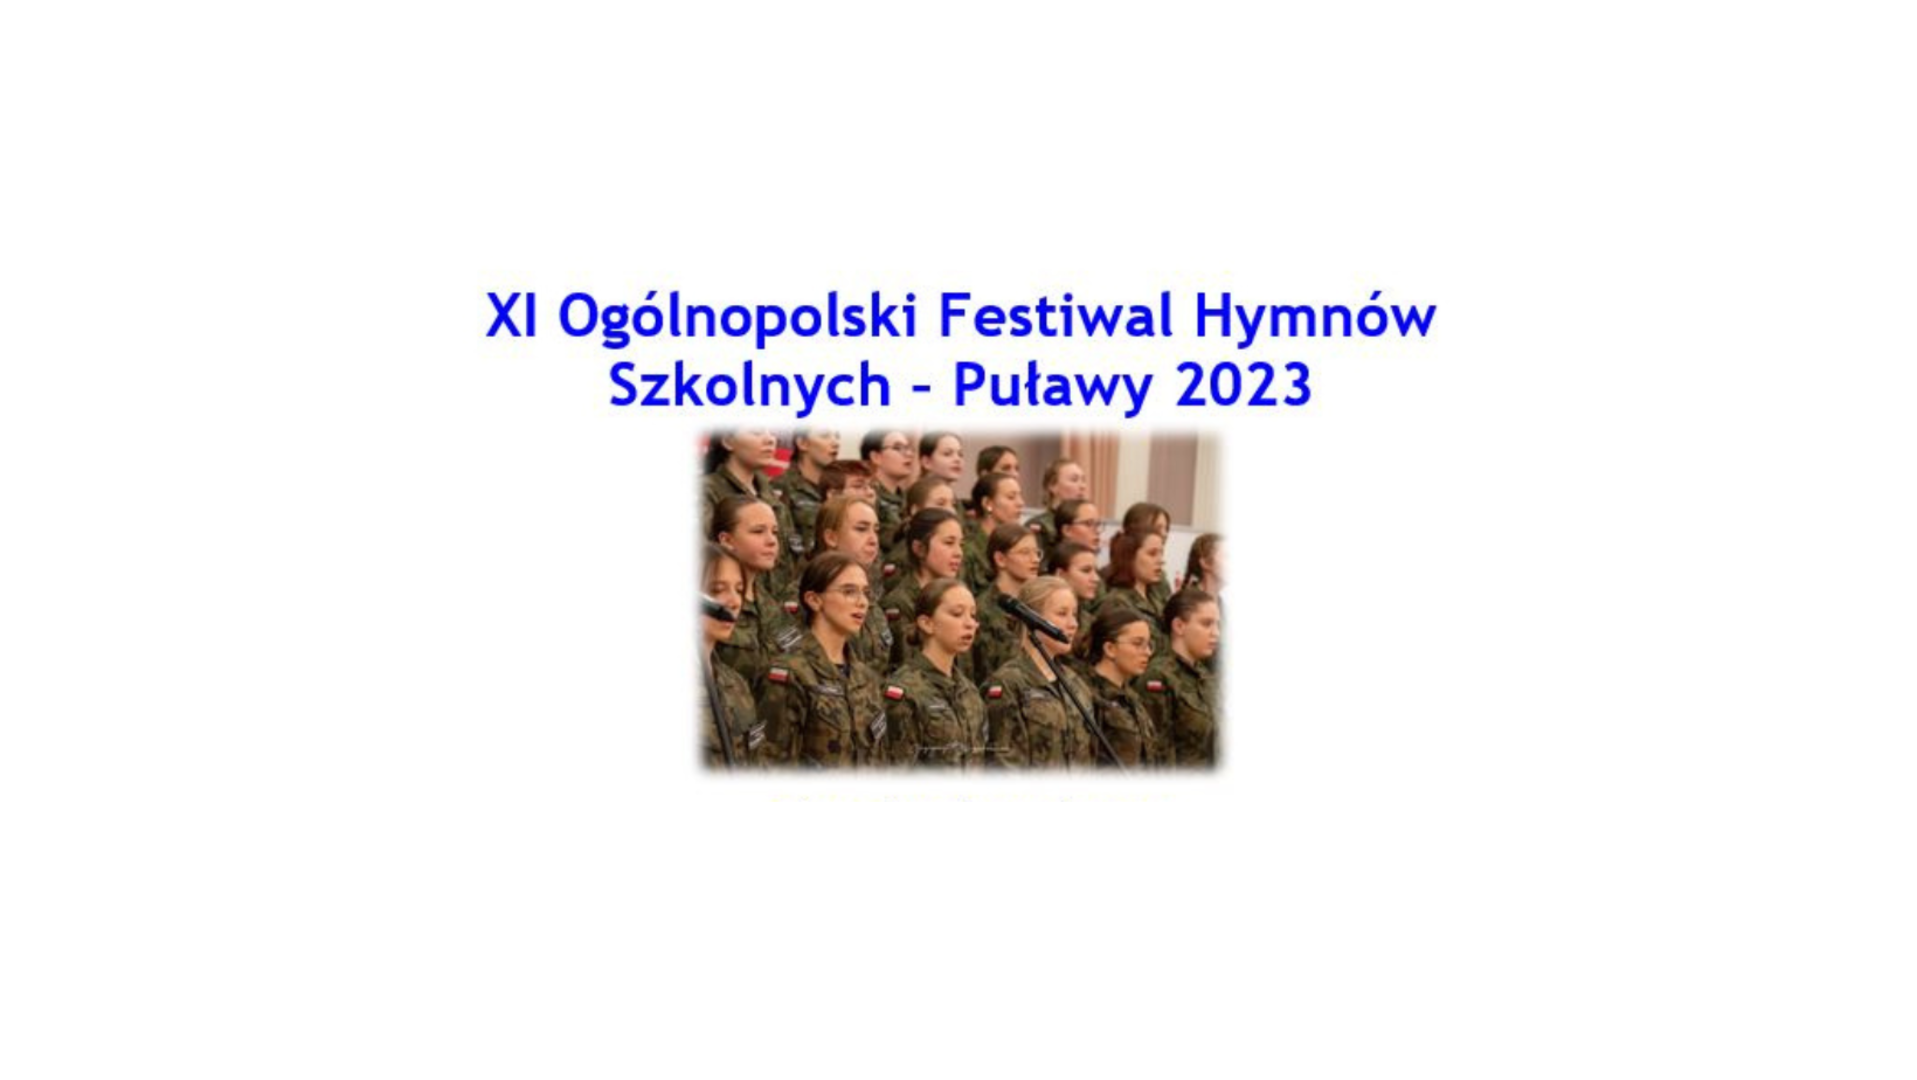 XI Ogólnopolski Festiwal Hymnów Szkolnych - Puławy 2023, zdjęcie chóru w mundurach moro